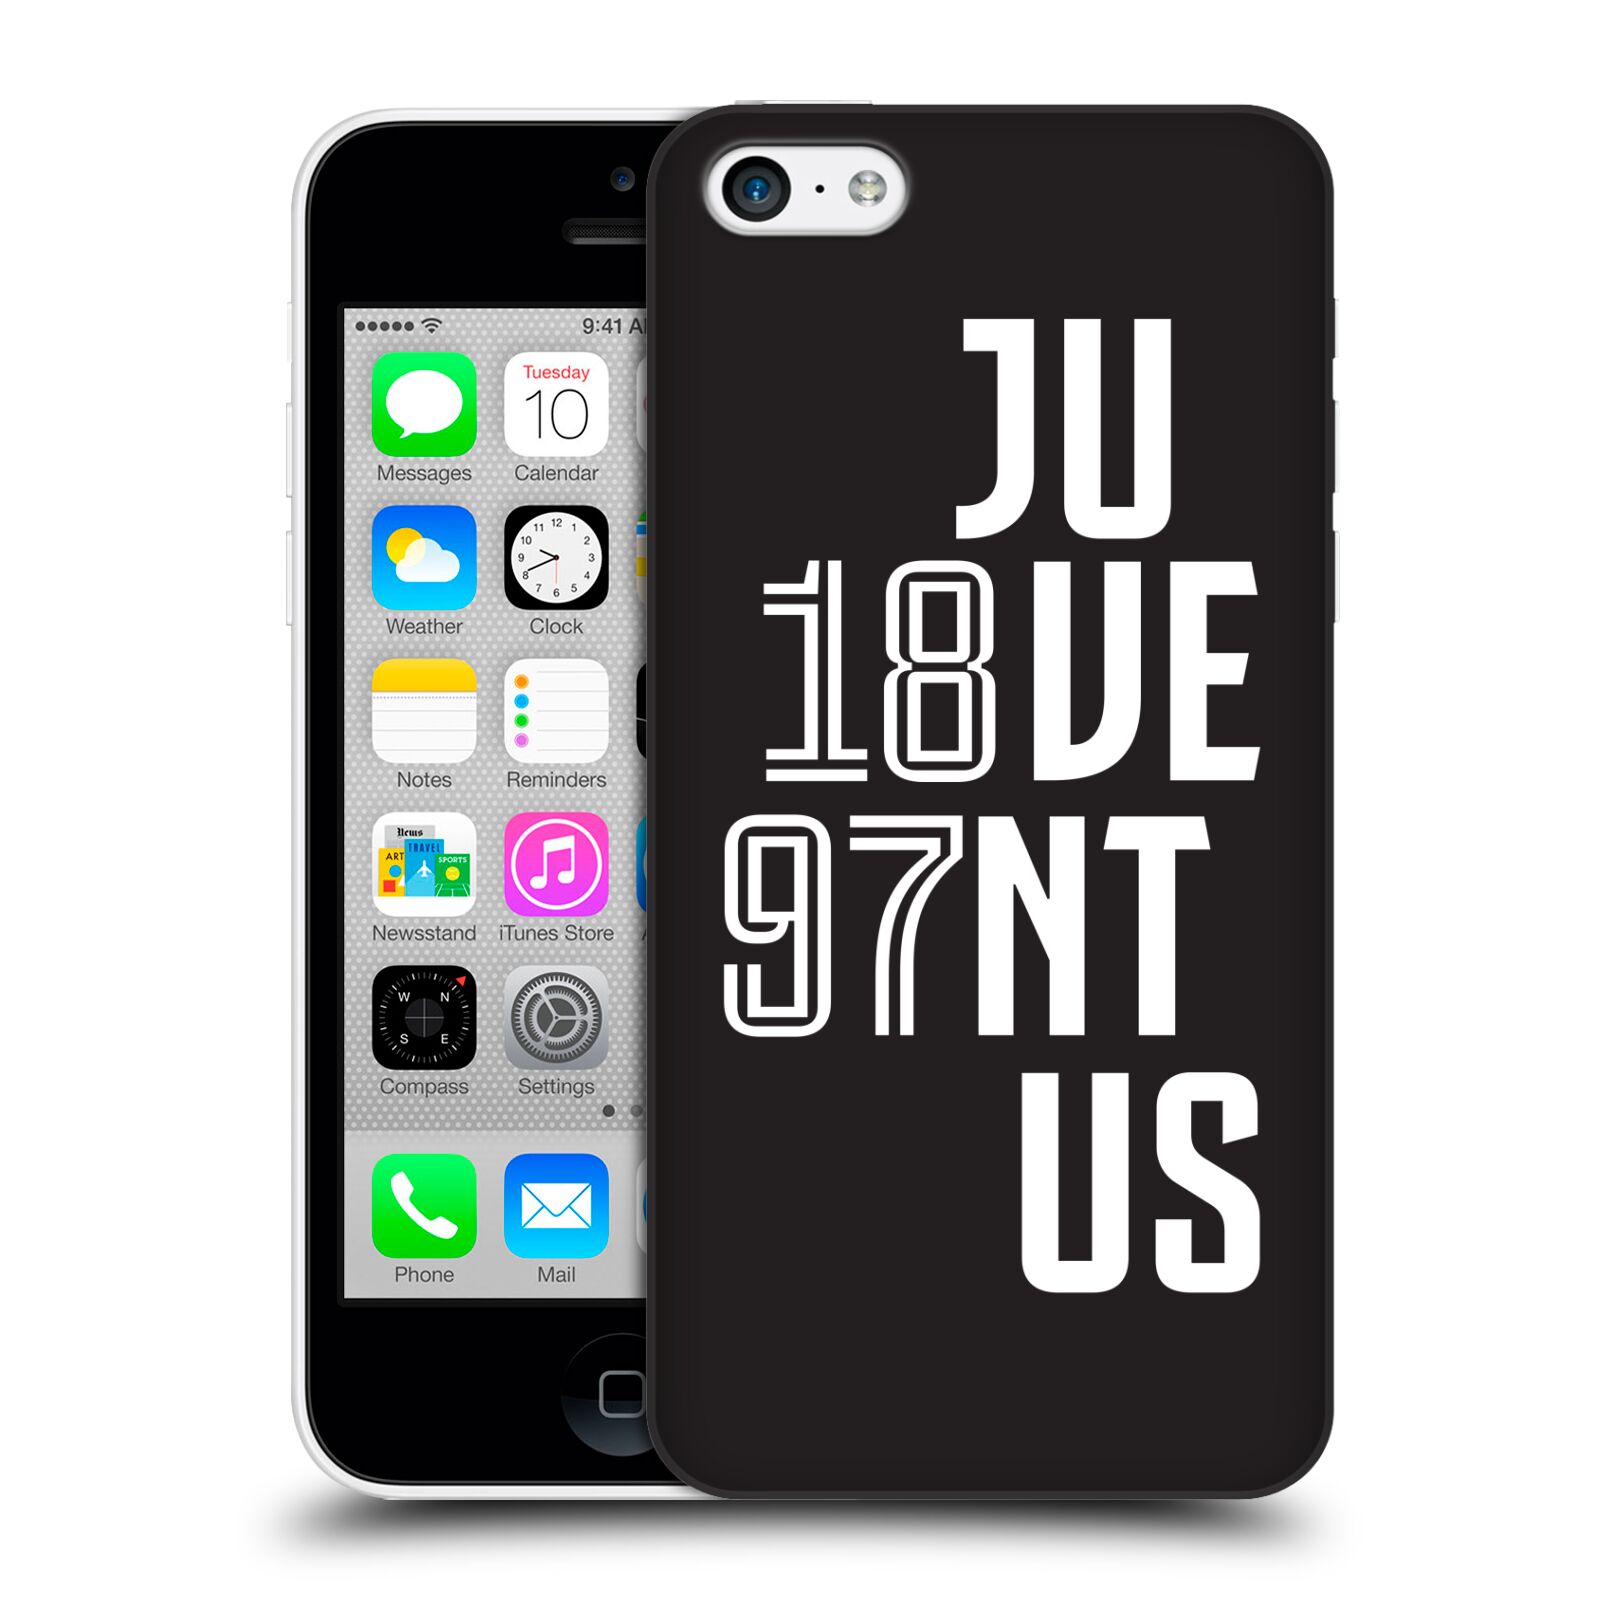 Zadní obal pro mobil Apple Iphone 5C - HEAD CASE - Fotbalový klub Juventus - Velké písmo